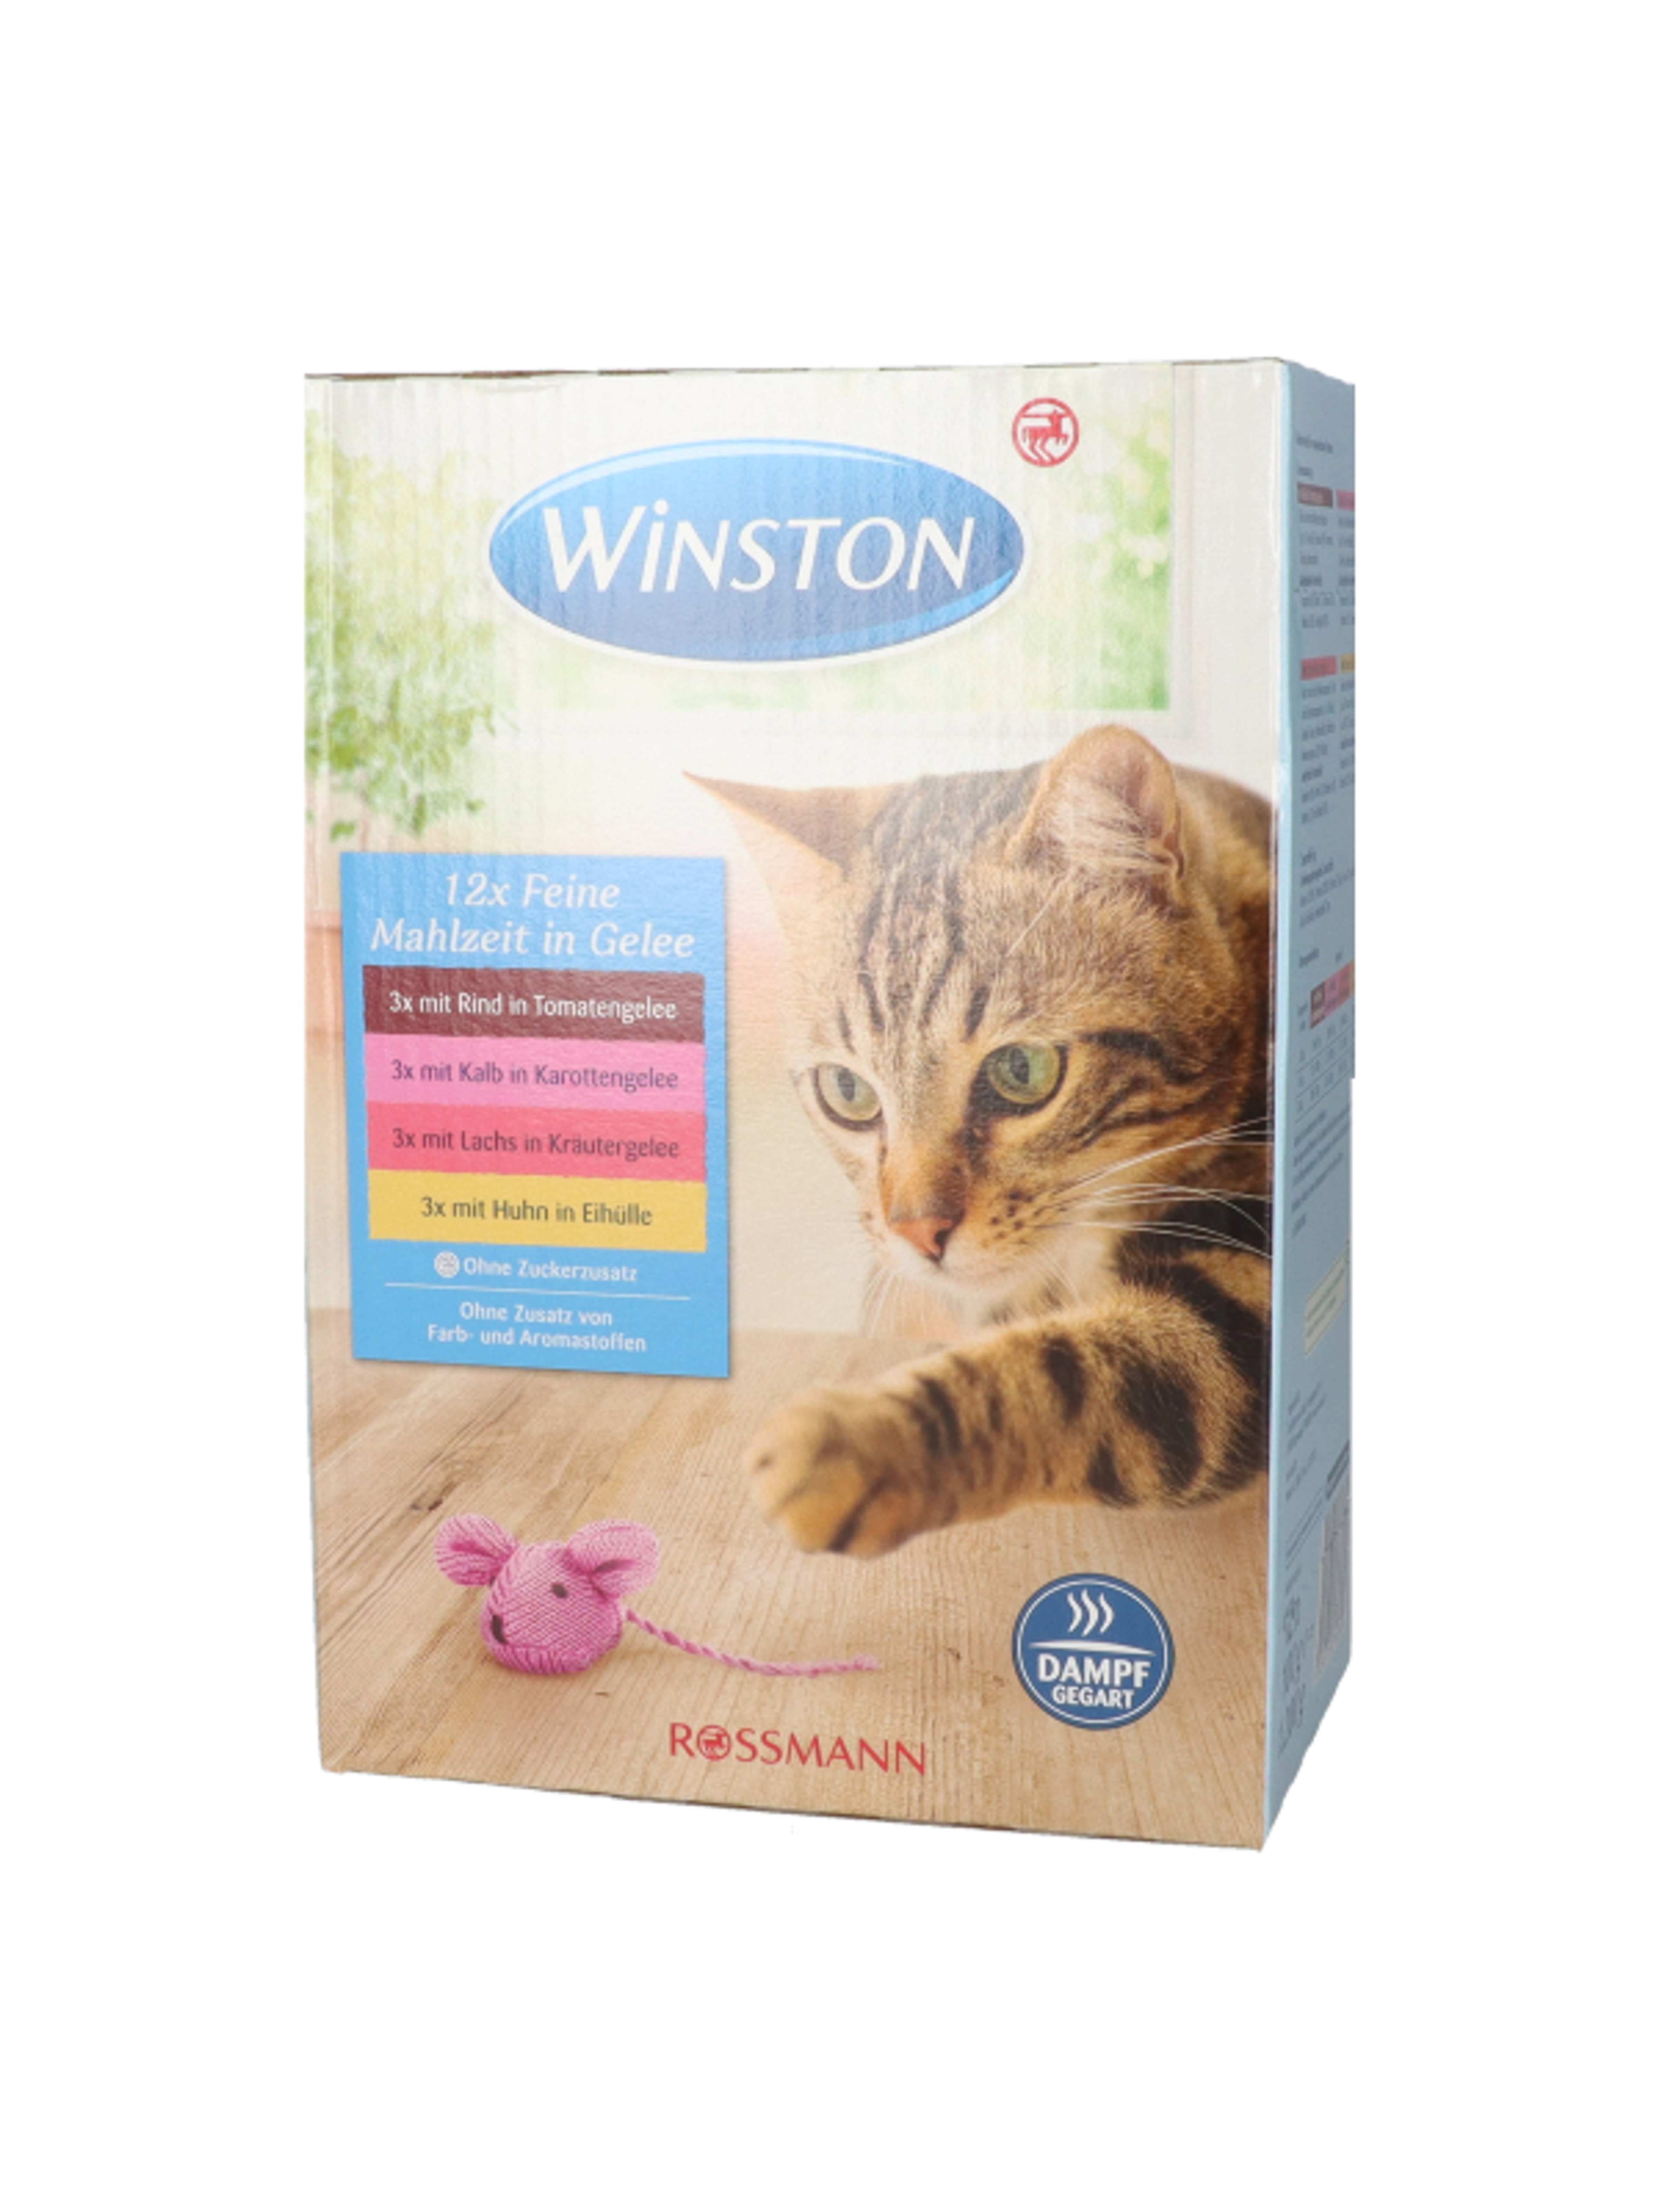 Winston alutasak macskáknak, zöldség zselében - 1200 g-6